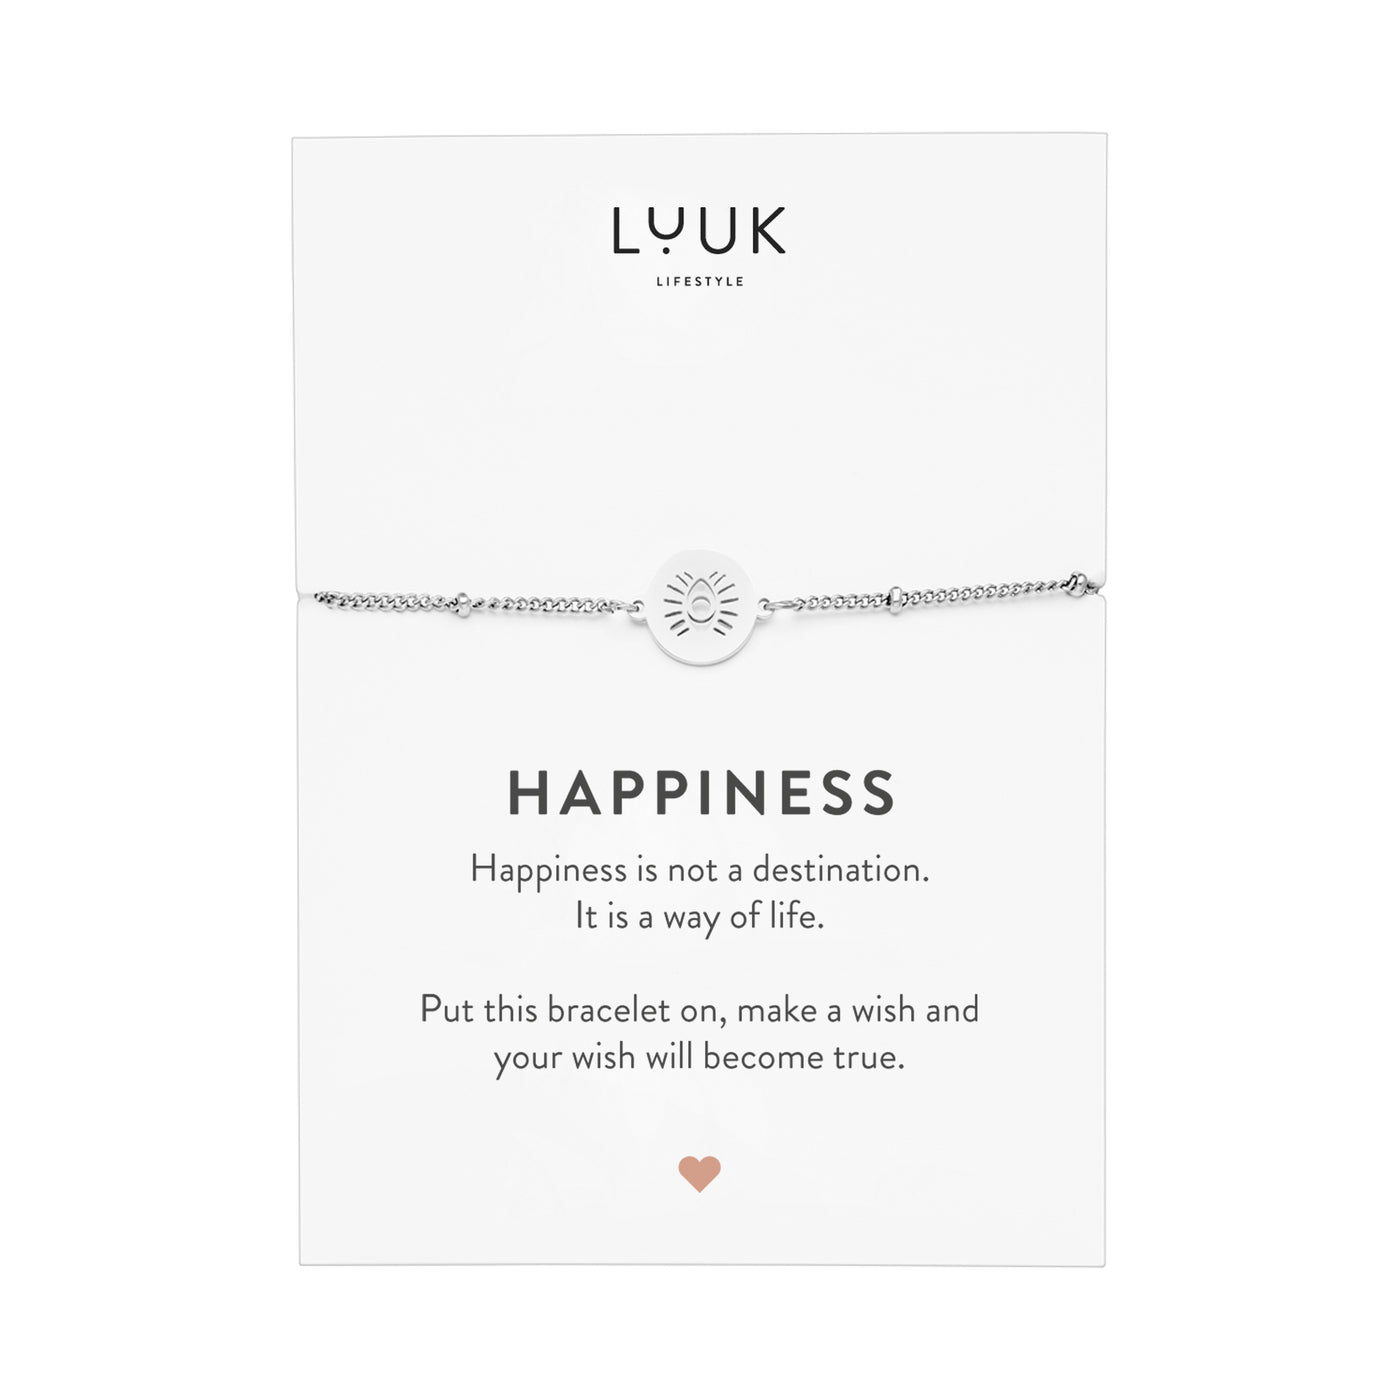 Armband mit Buddha Auge Anhänger in Silber auf Happiness Spruchkarte von der Marke Luuk Lifestyle 